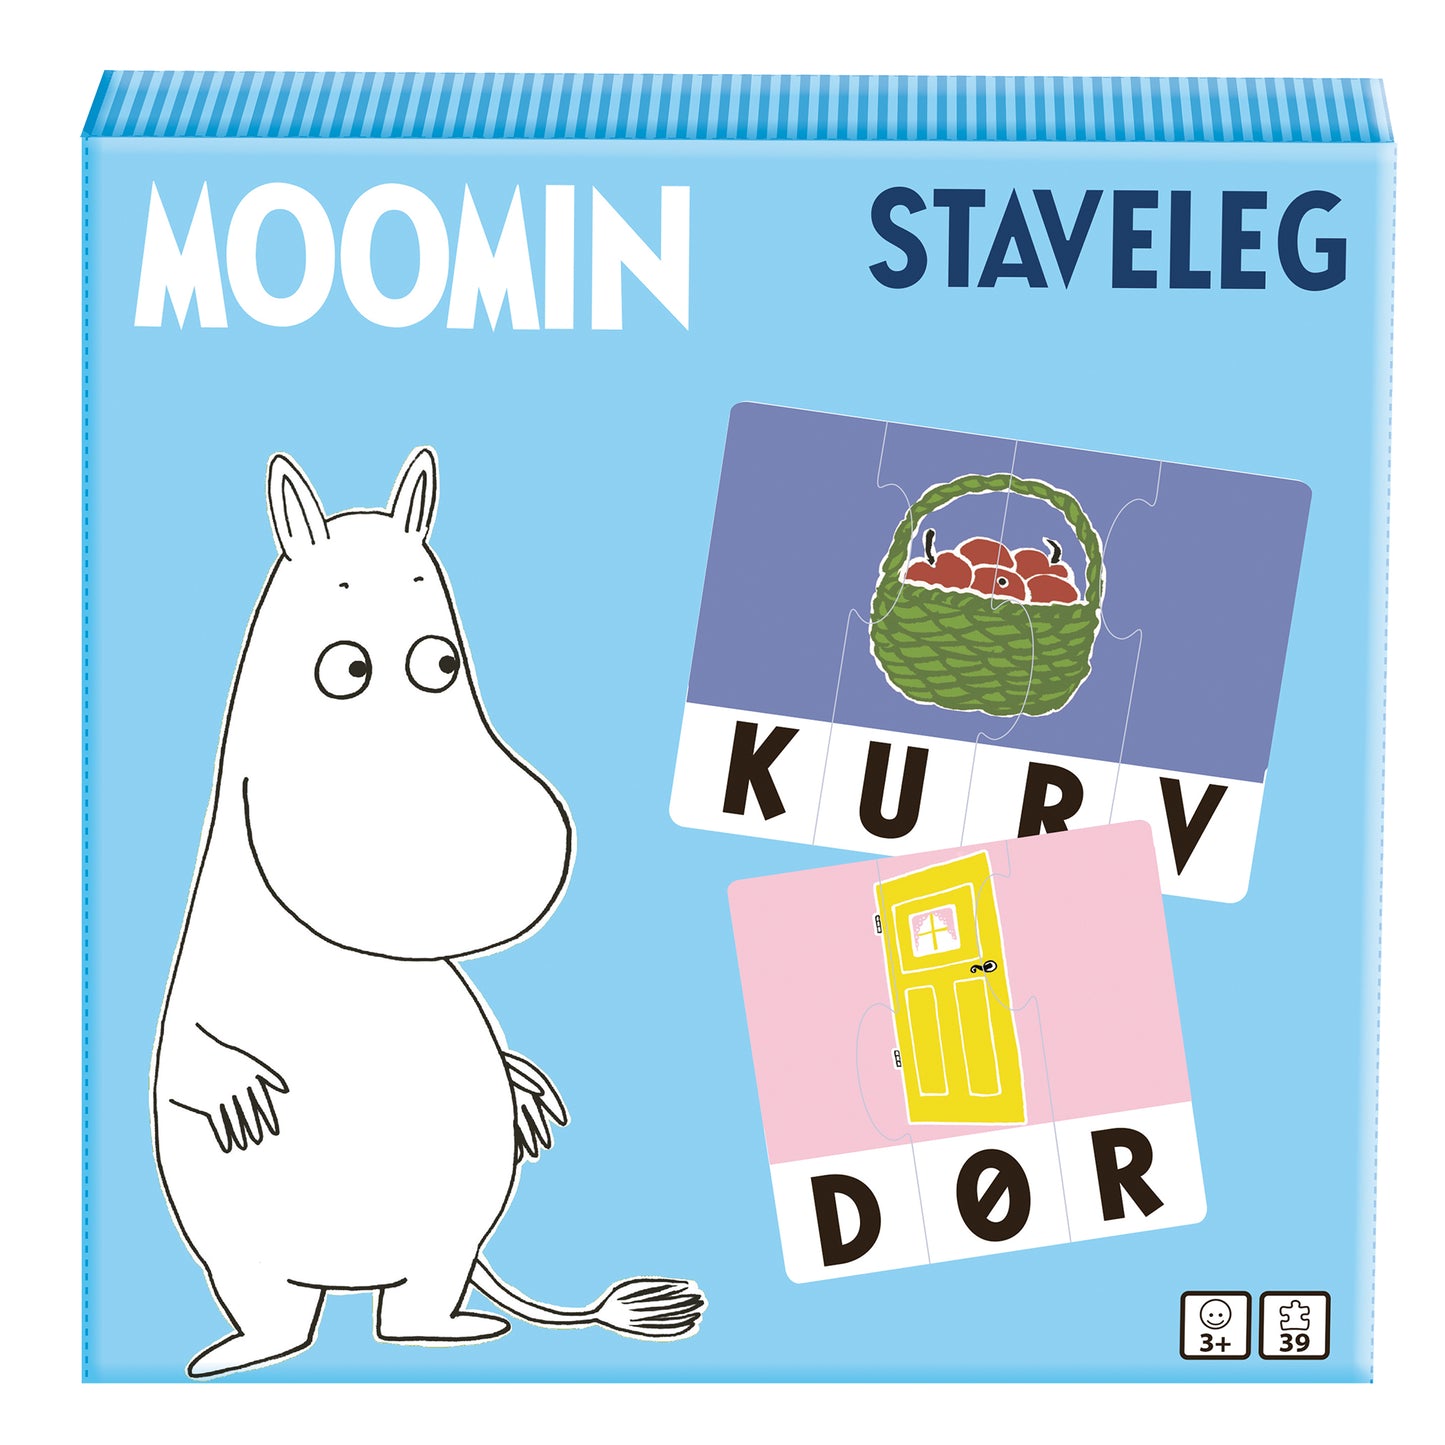 Moomin - Staveleg